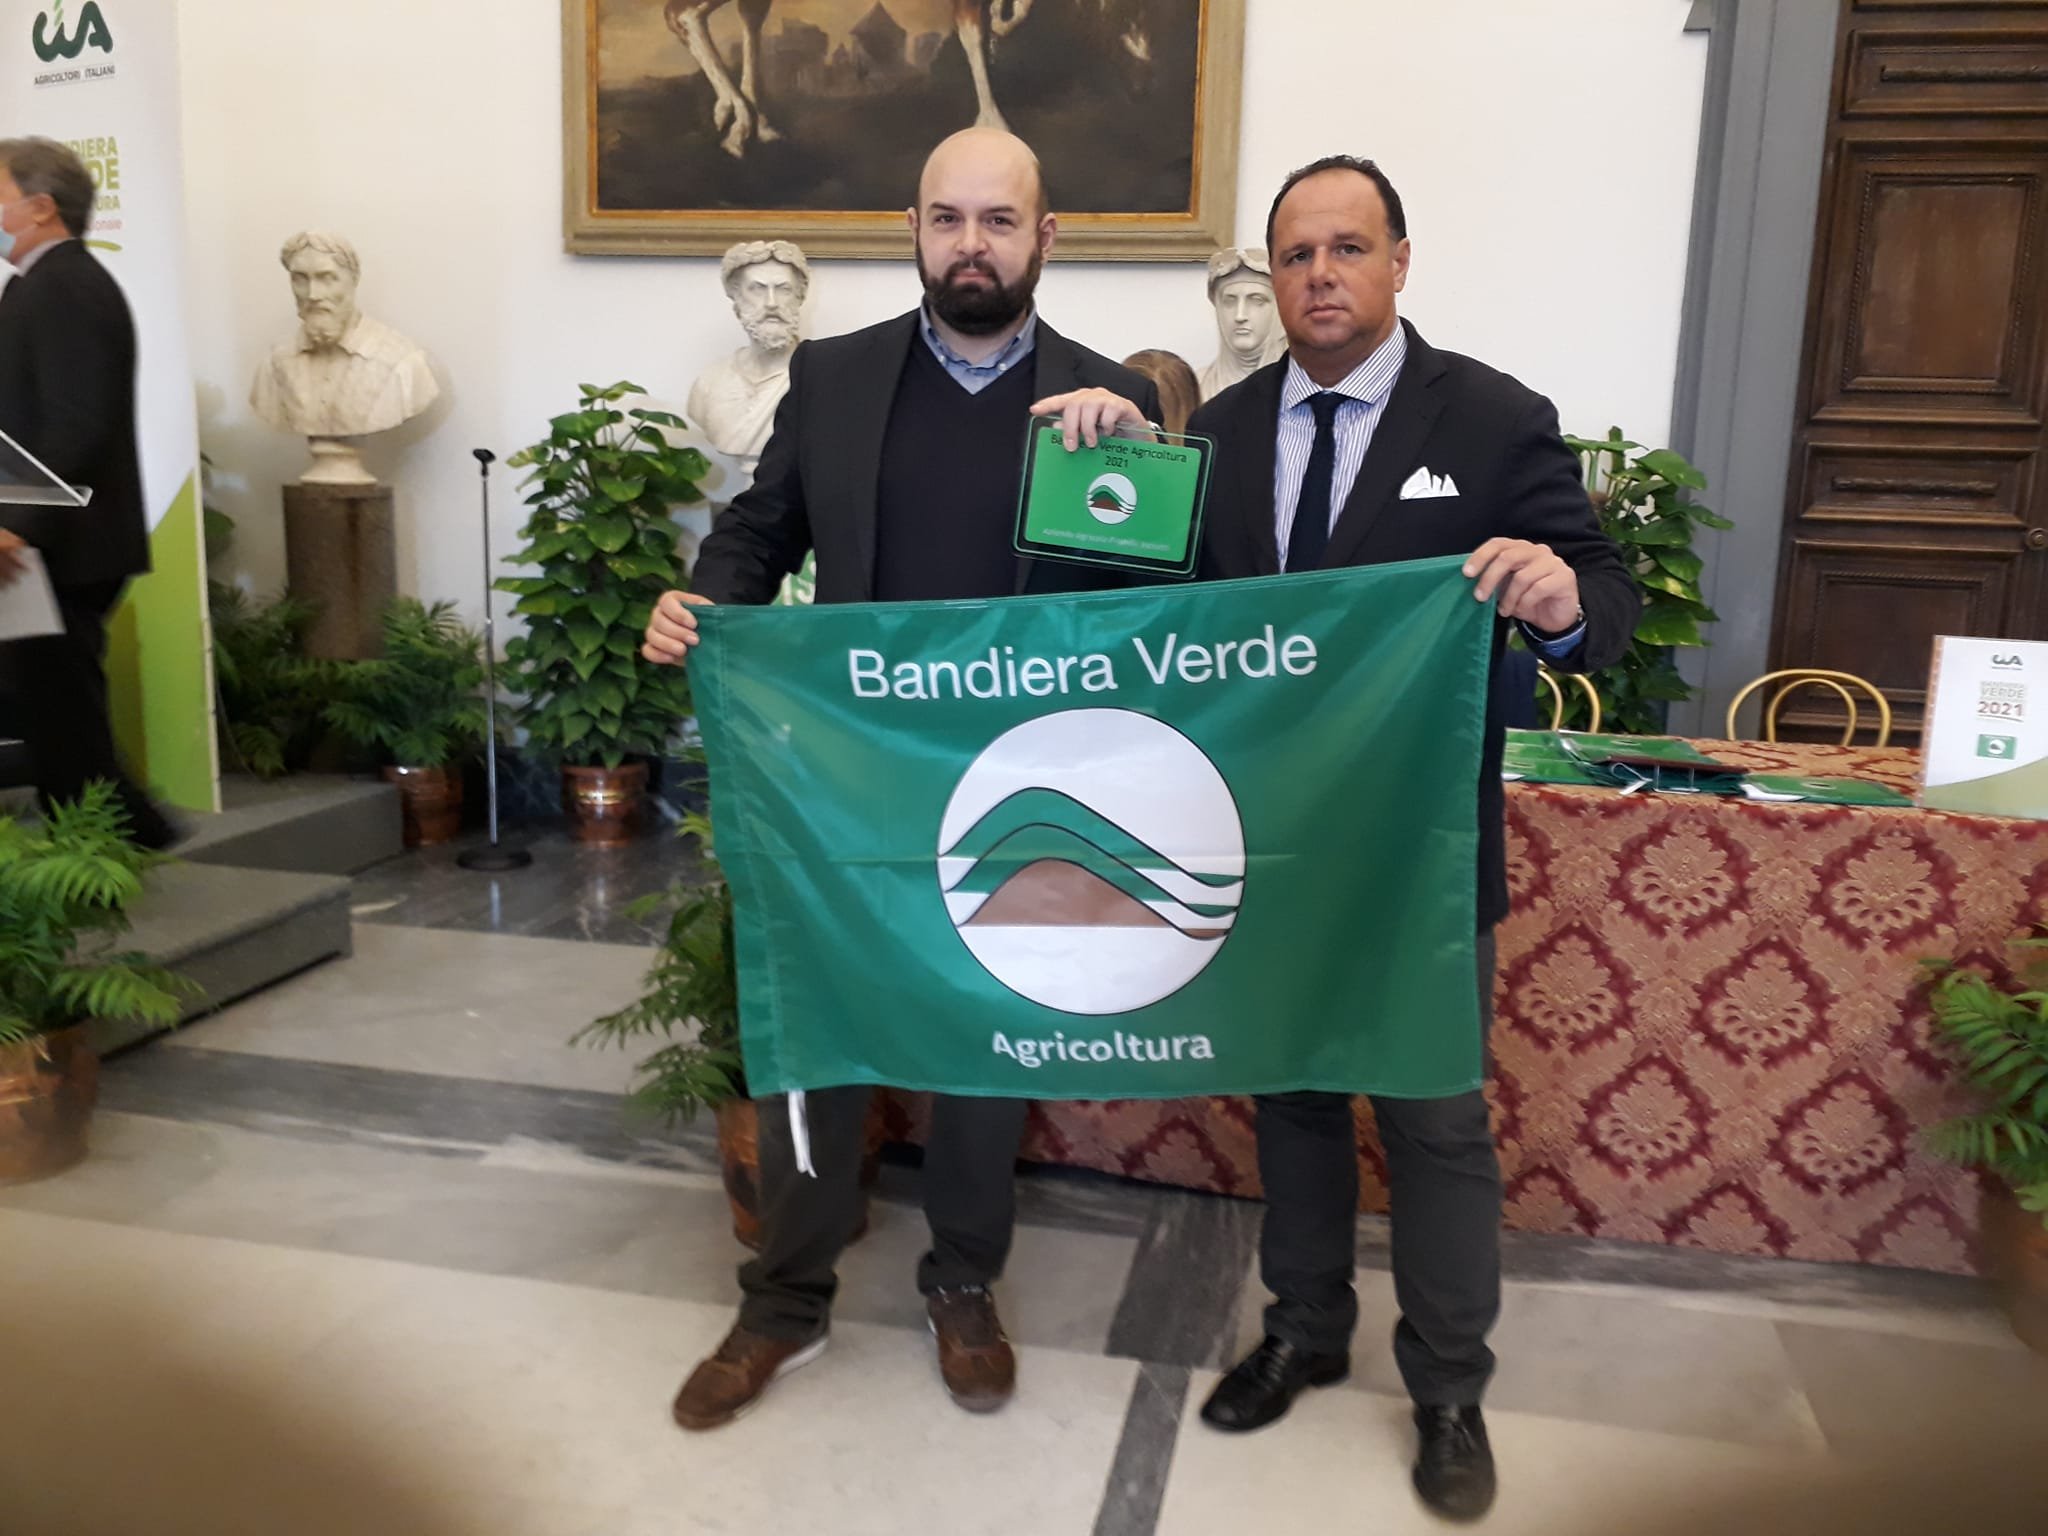 Grazie alla loro app per gestire l’attività agricola i fratelli Vanotti vincono la Bandiera Verde 2021 di Cia